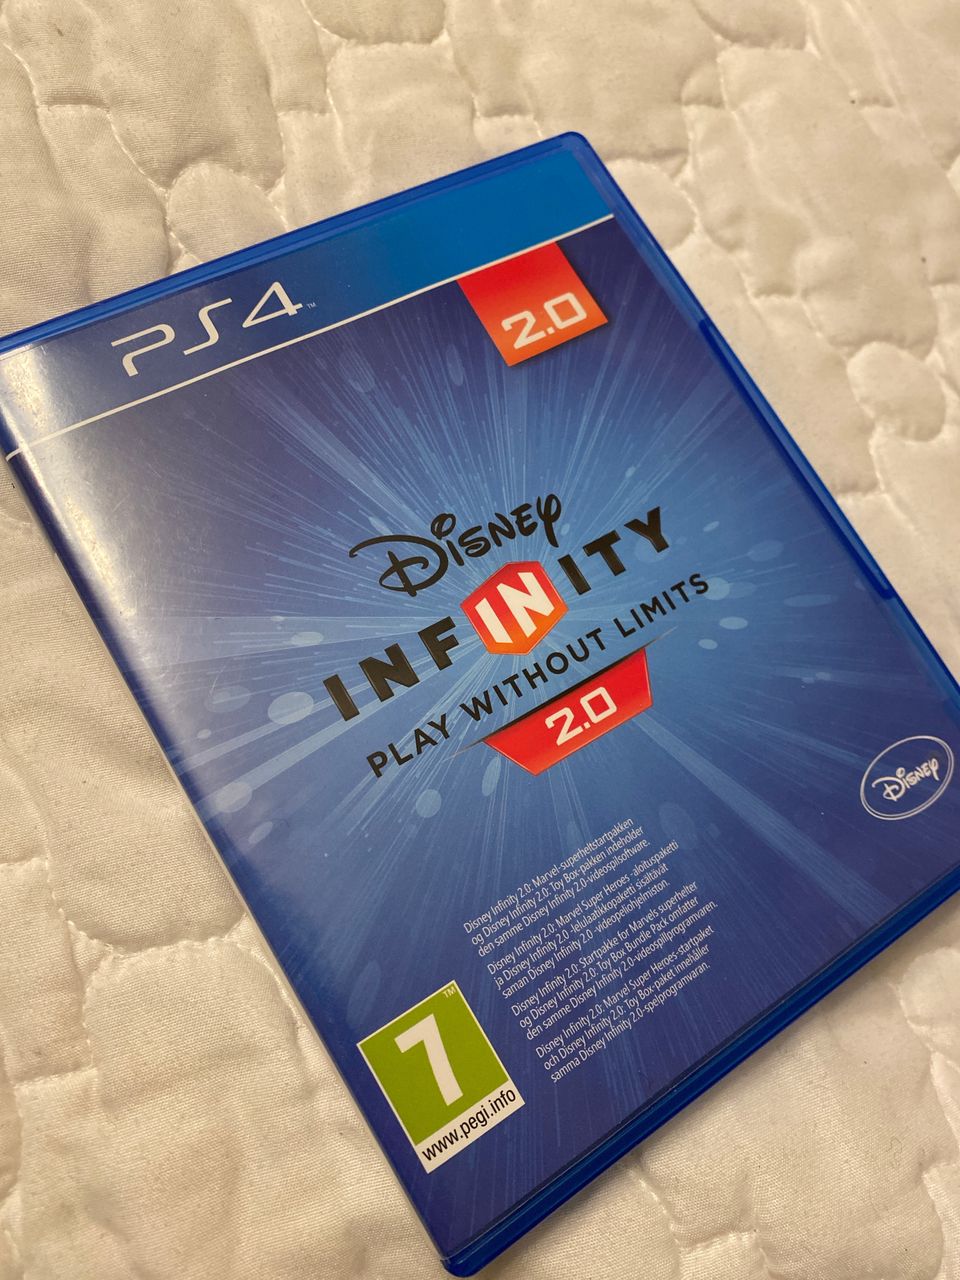 PS4 Infinity 2.0